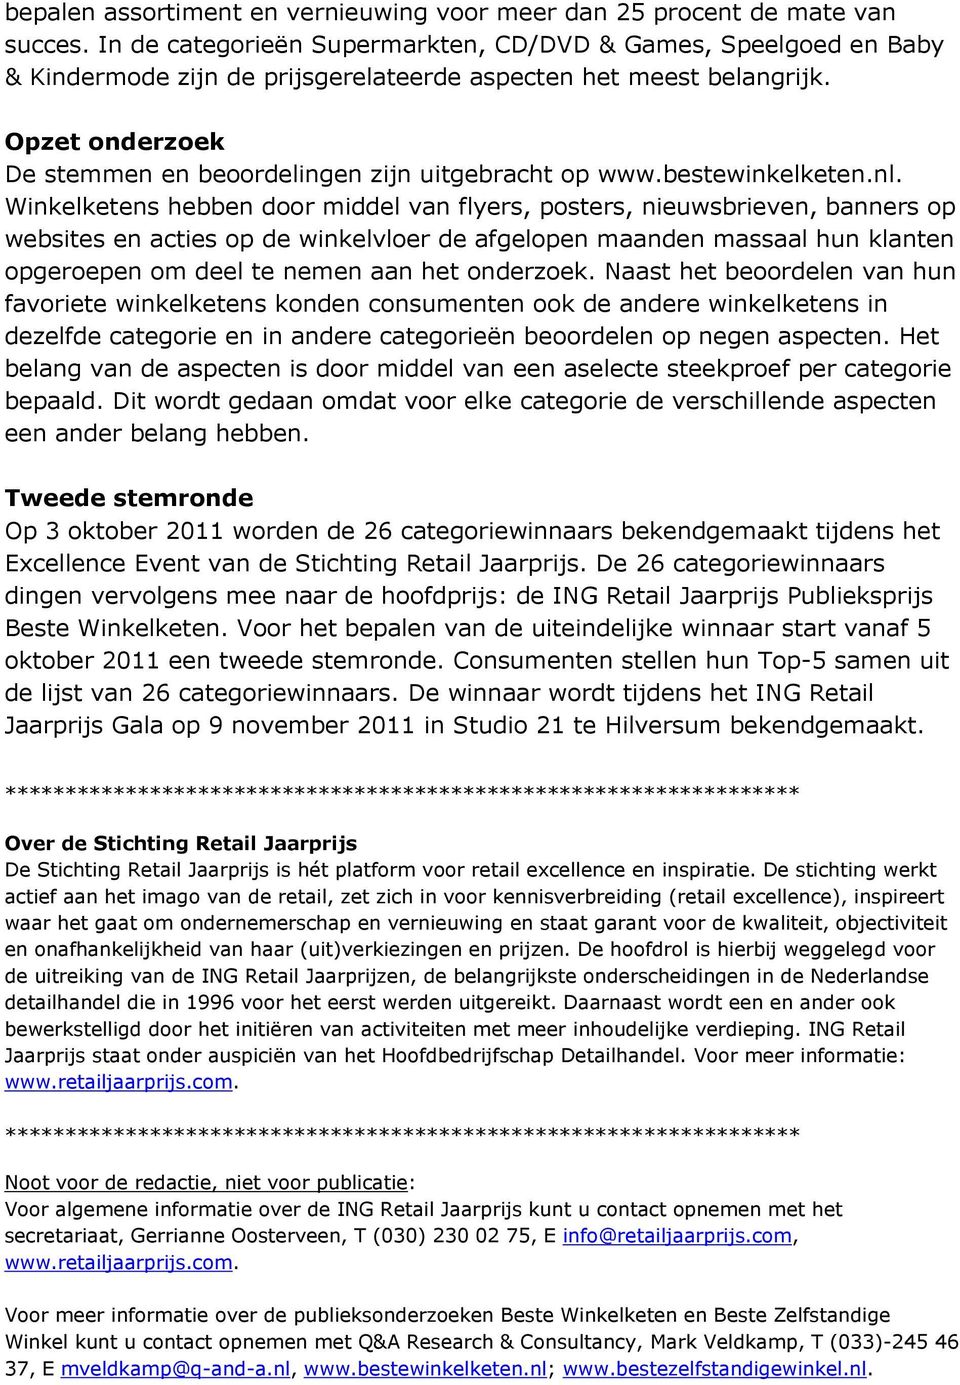 Opzet onderzoek De stemmen en beoordelingen zijn uitgebracht op www.bestewinkelketen.nl.